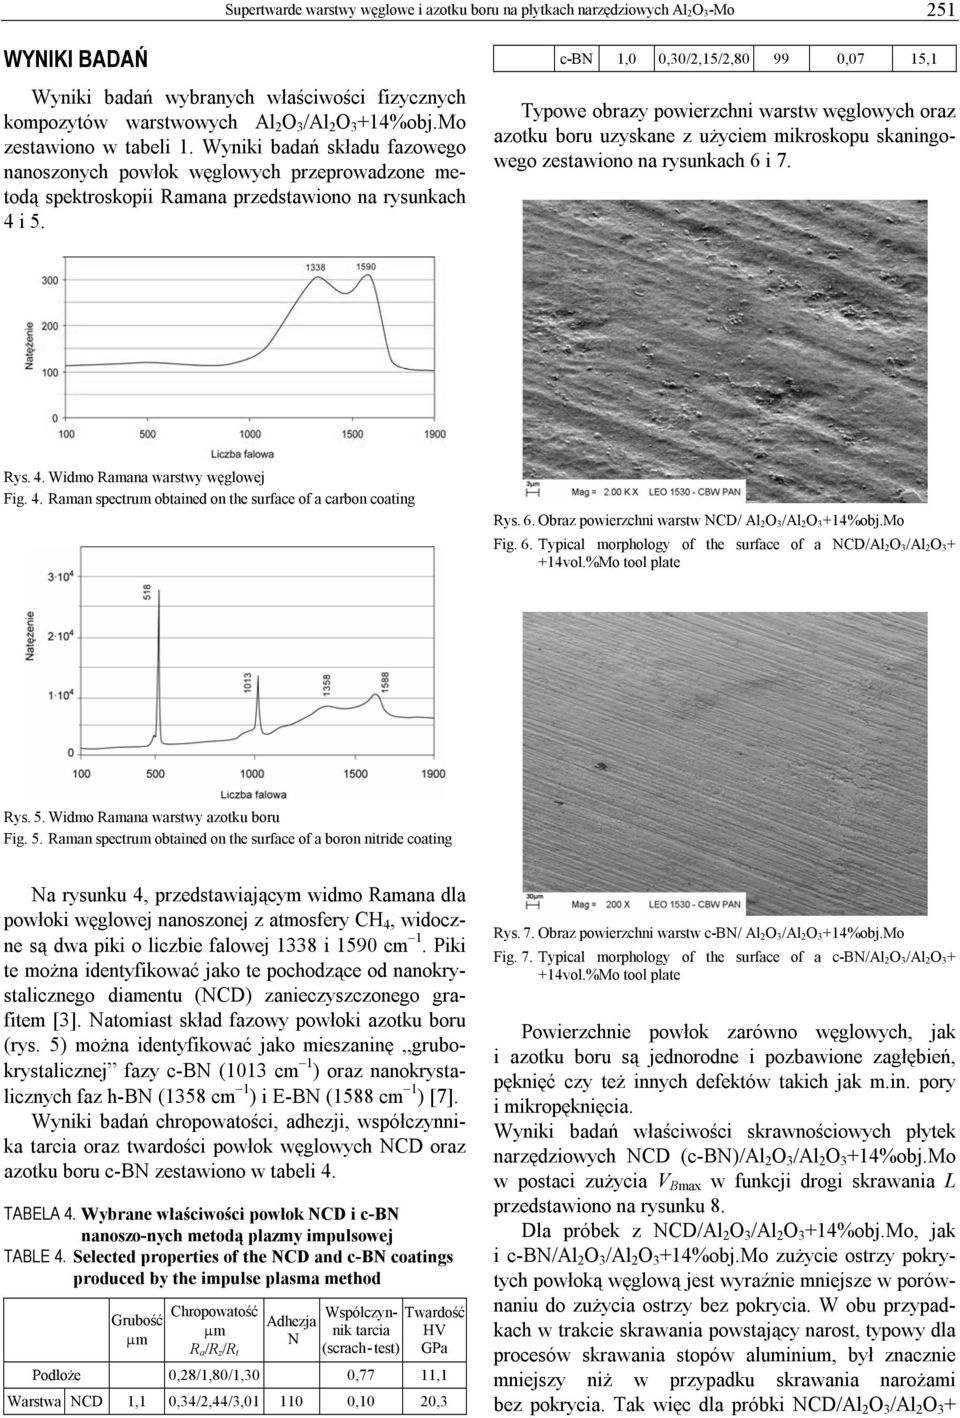 c-bn 1,0 0,30/2,15/2,80 99 0,07 15,1 Typowe obrazy powierzchni warstw węglowych oraz azotku boru uzyskane z użyciem mikroskopu skaningowego zestawiono na rysunkach 6 i 7. Rys. 4.